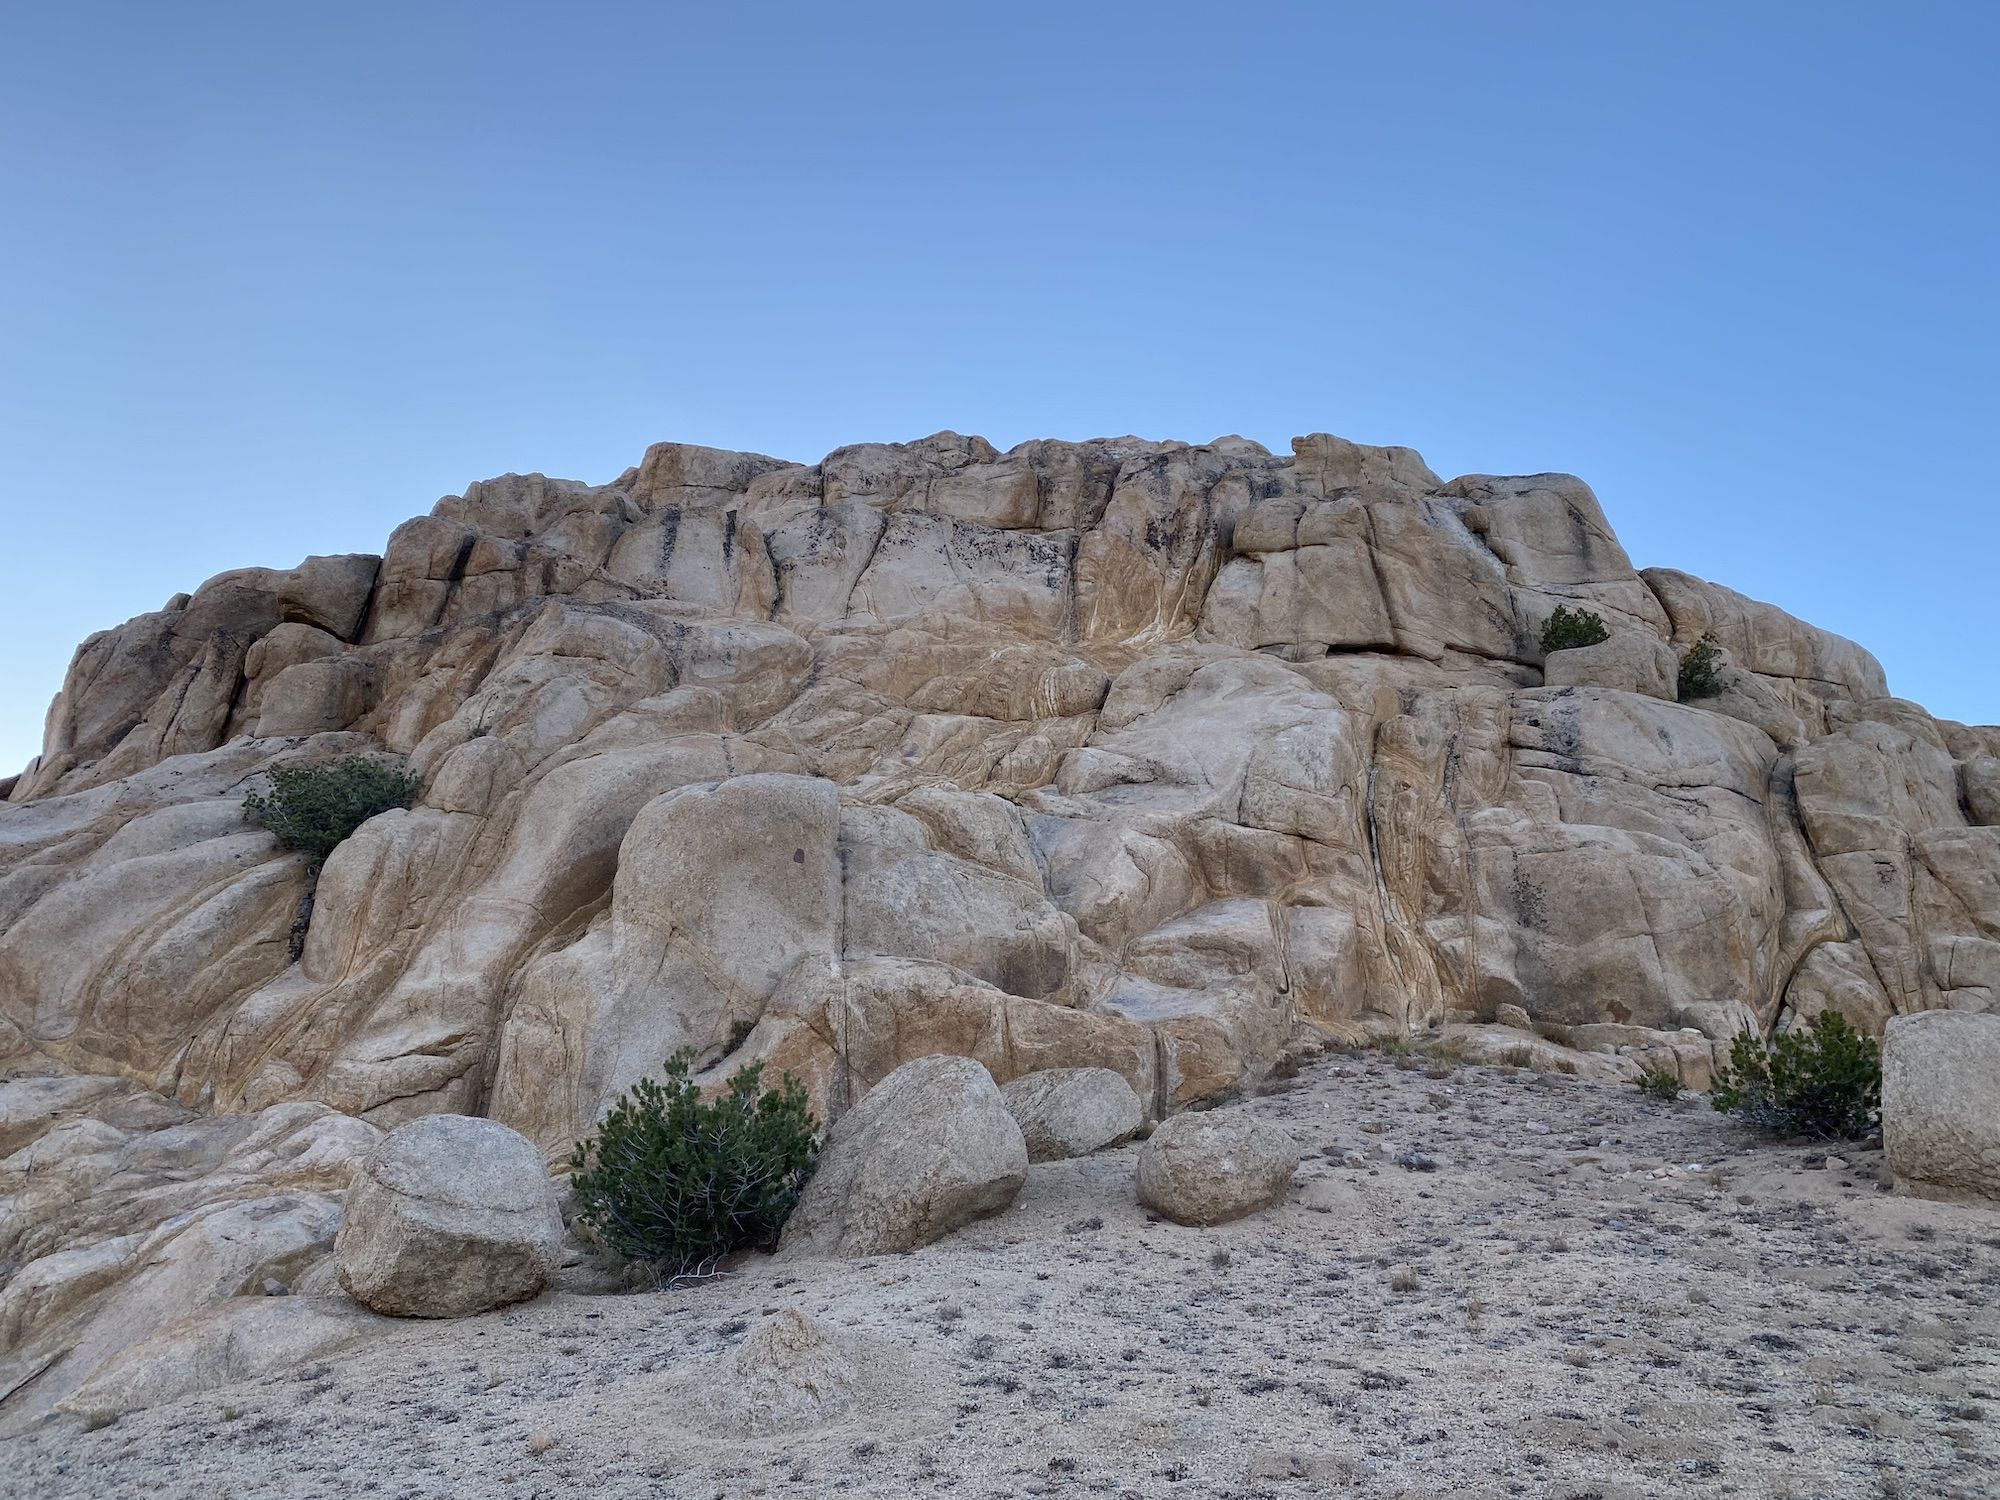 A large granite boulder